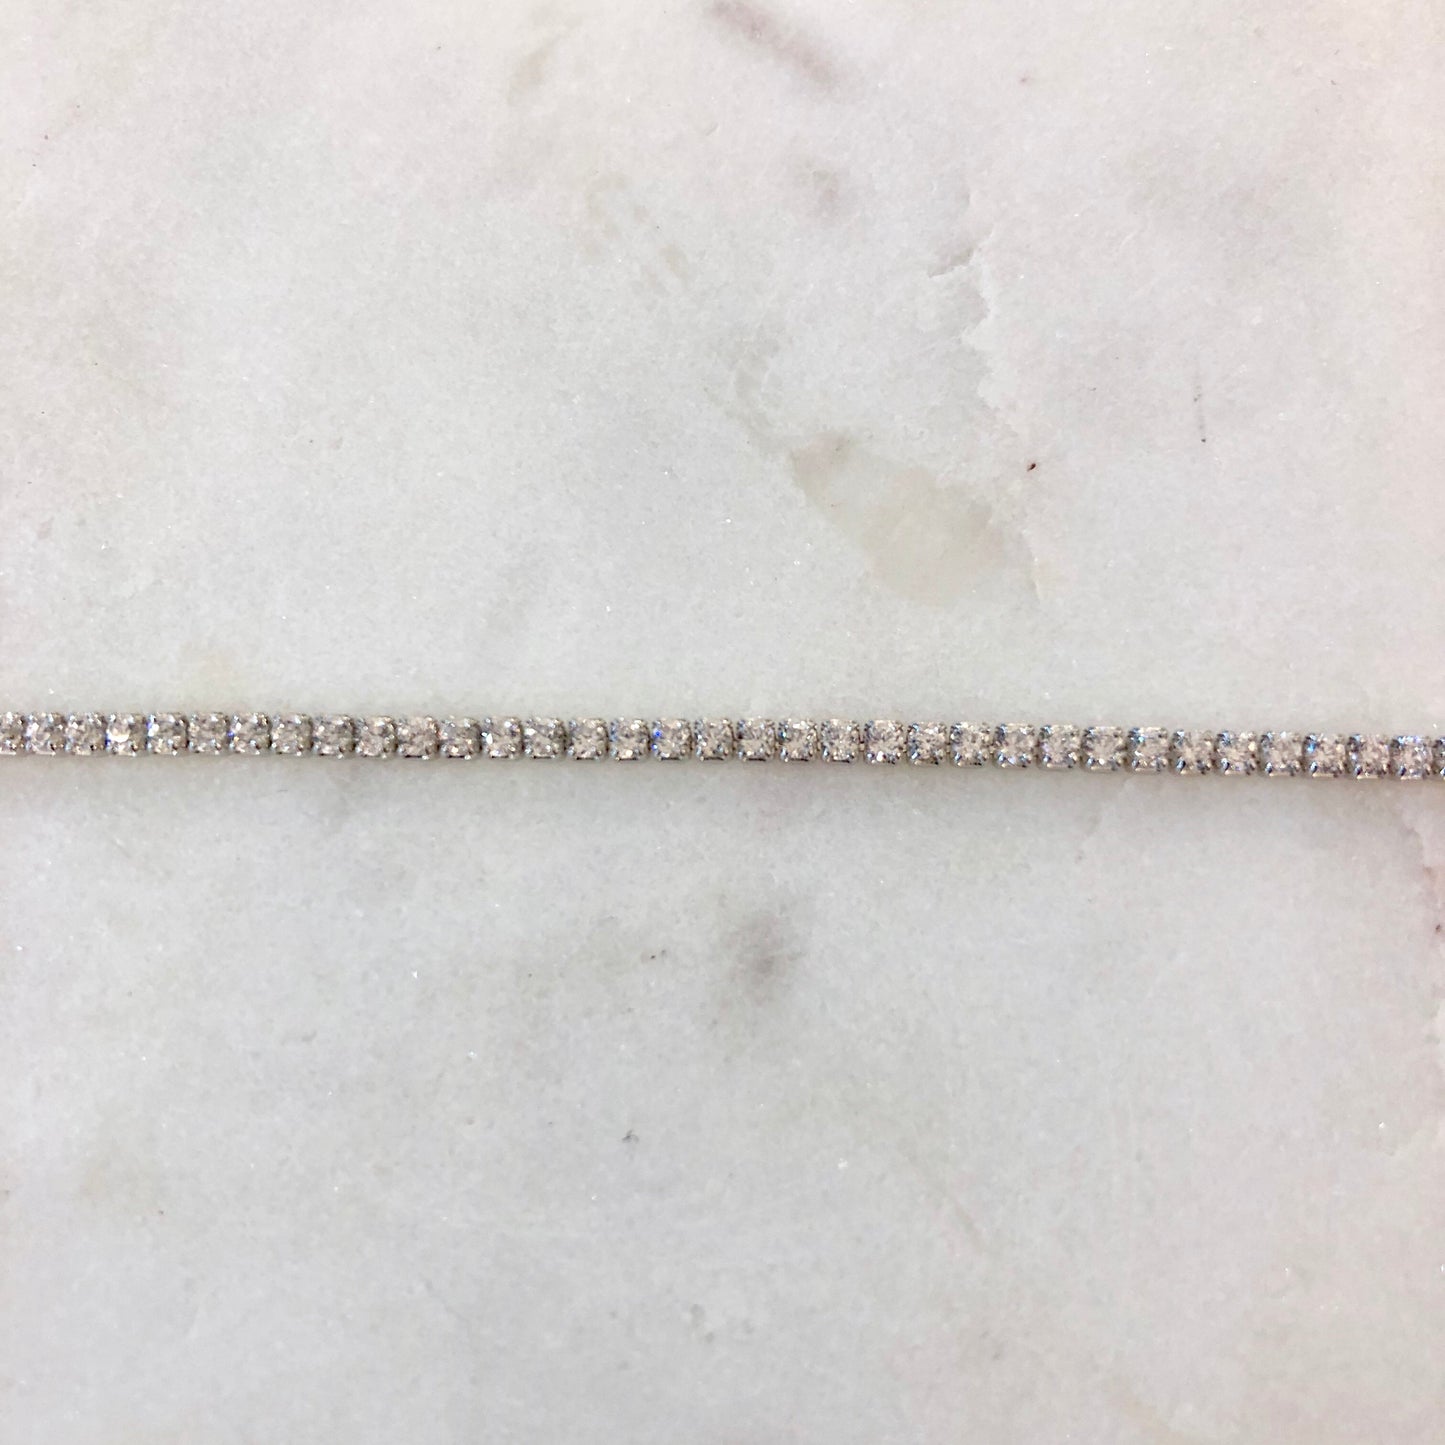 Silver CZ Line Bracelet 14.5-17.5cm - John Ross Jewellers